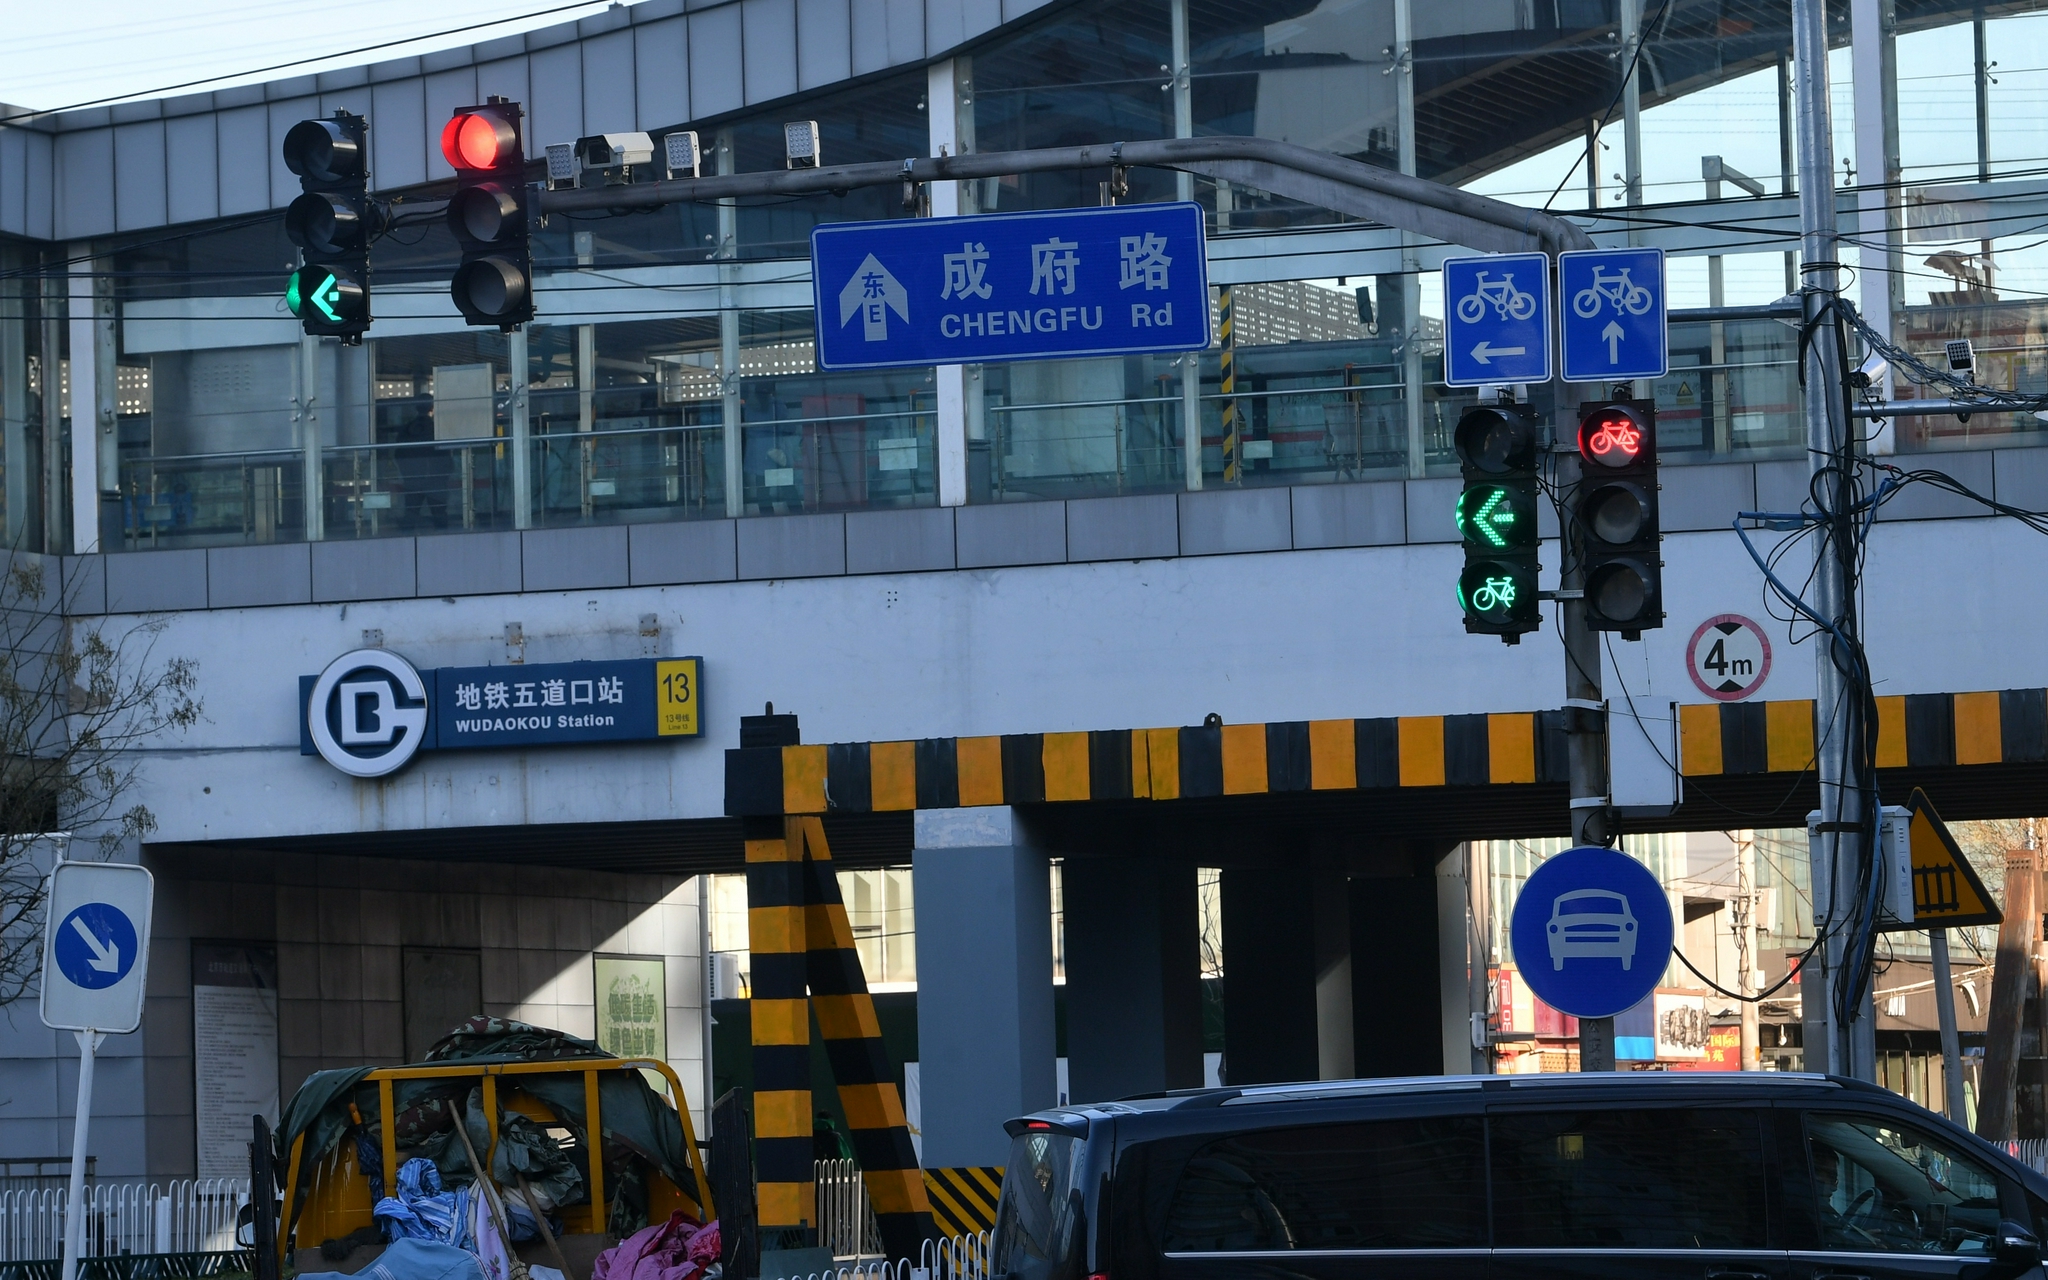 五道口路口增设了非机动车左转专用信号灯。新京报记者 王贵彬 摄